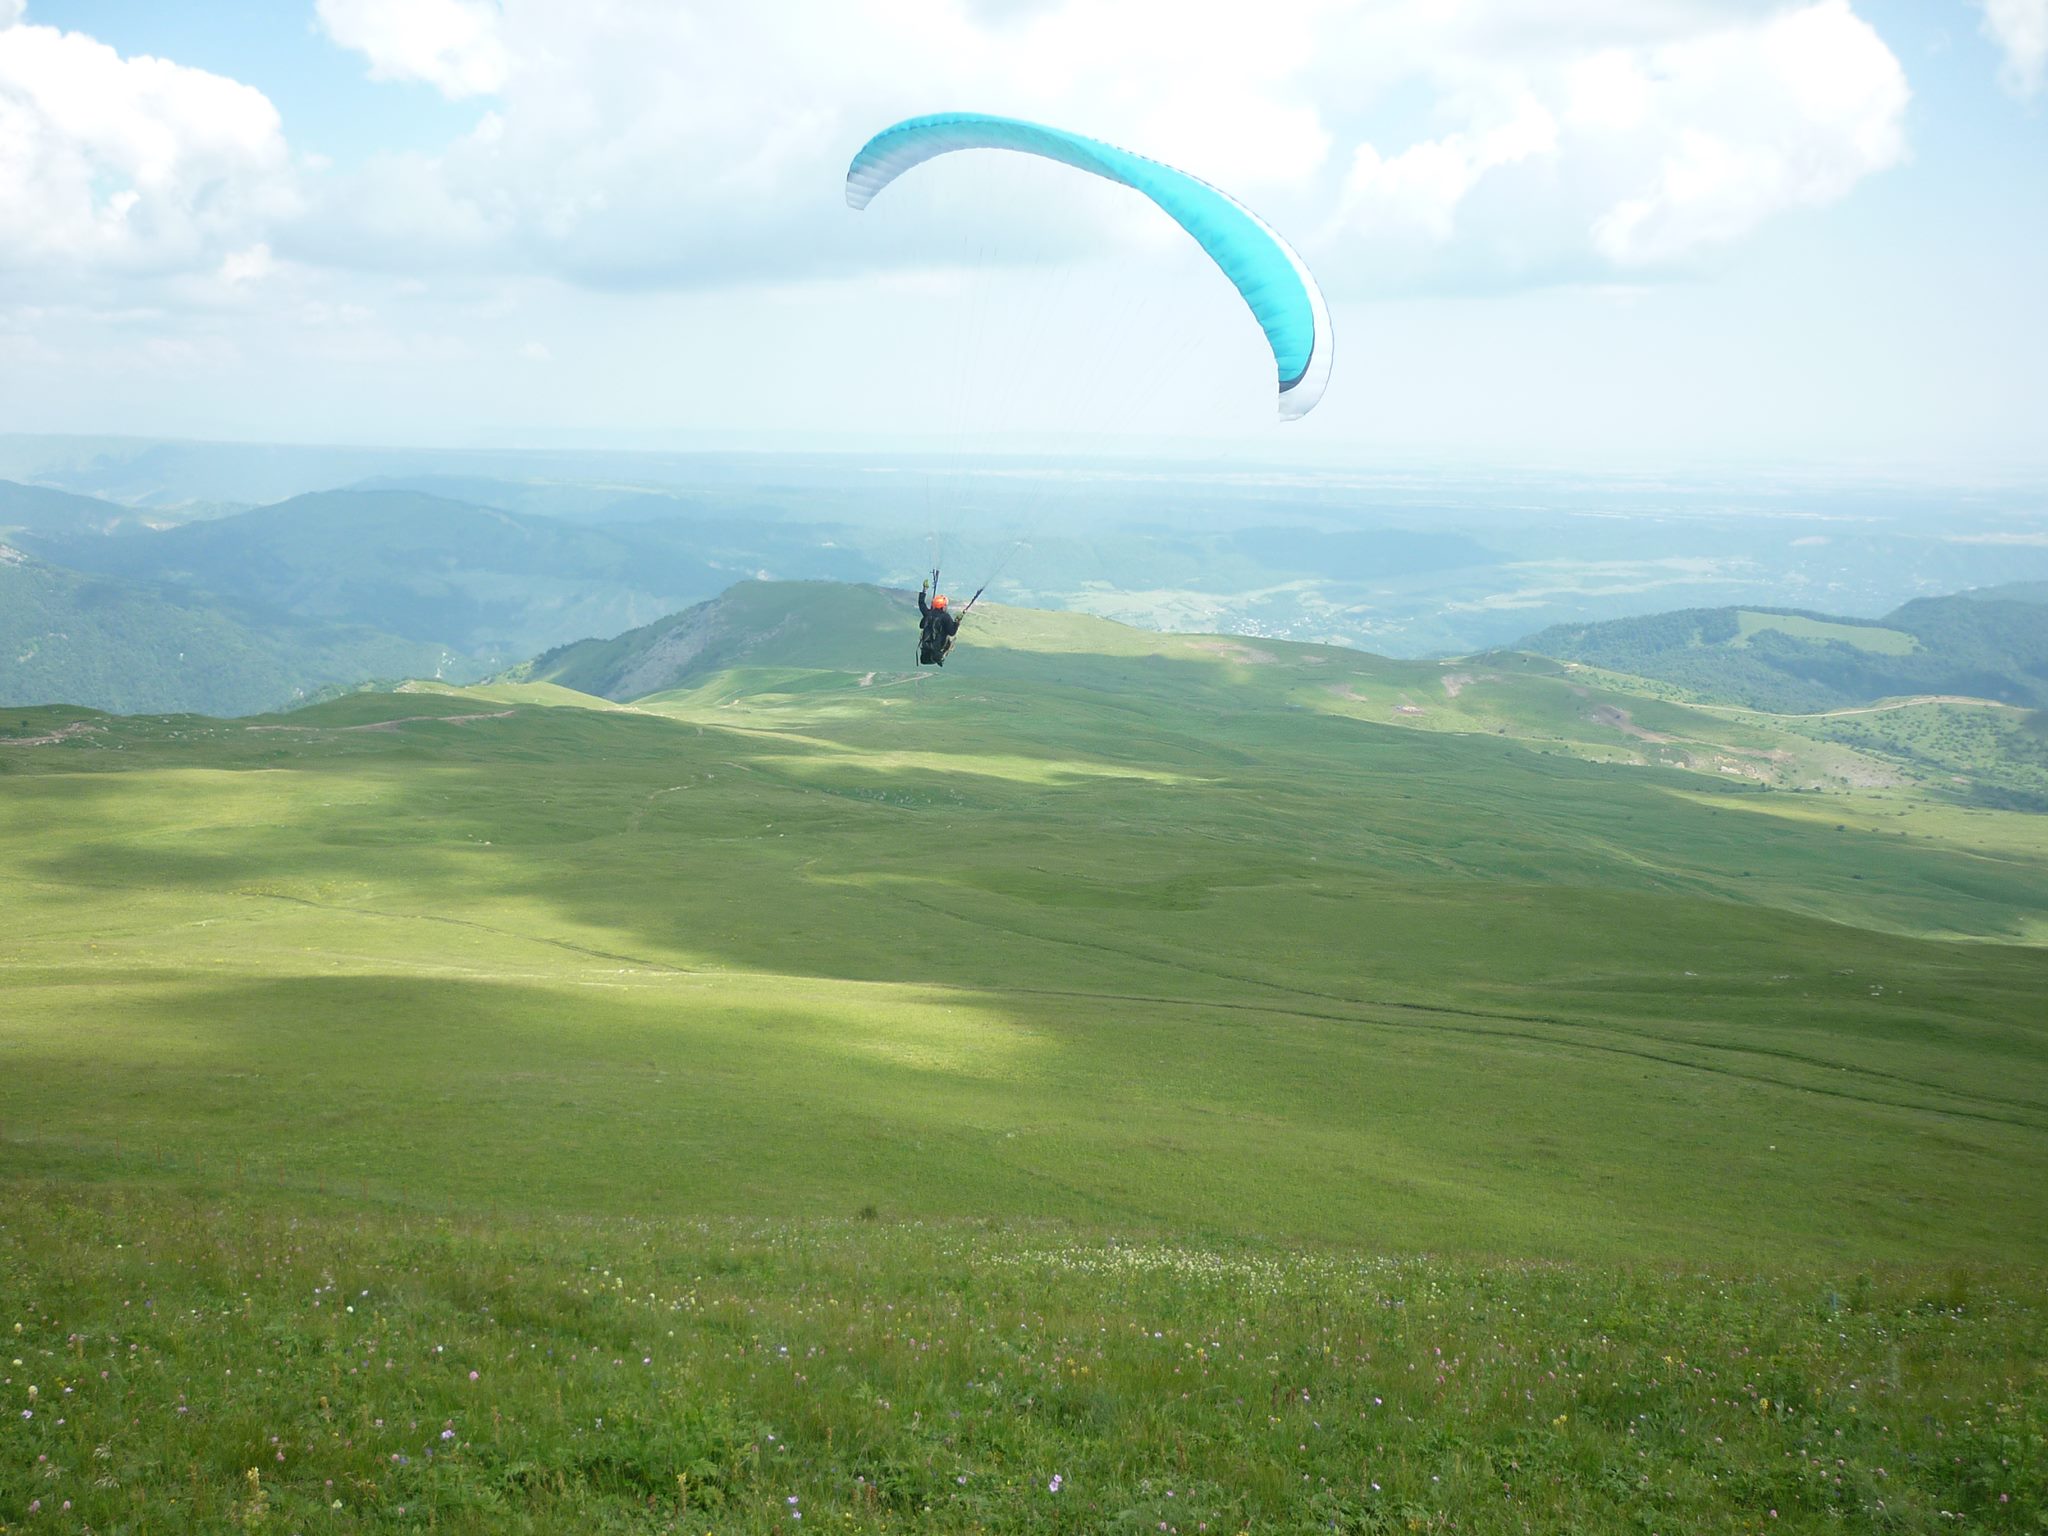 First air sports festival held in Azerbaijan